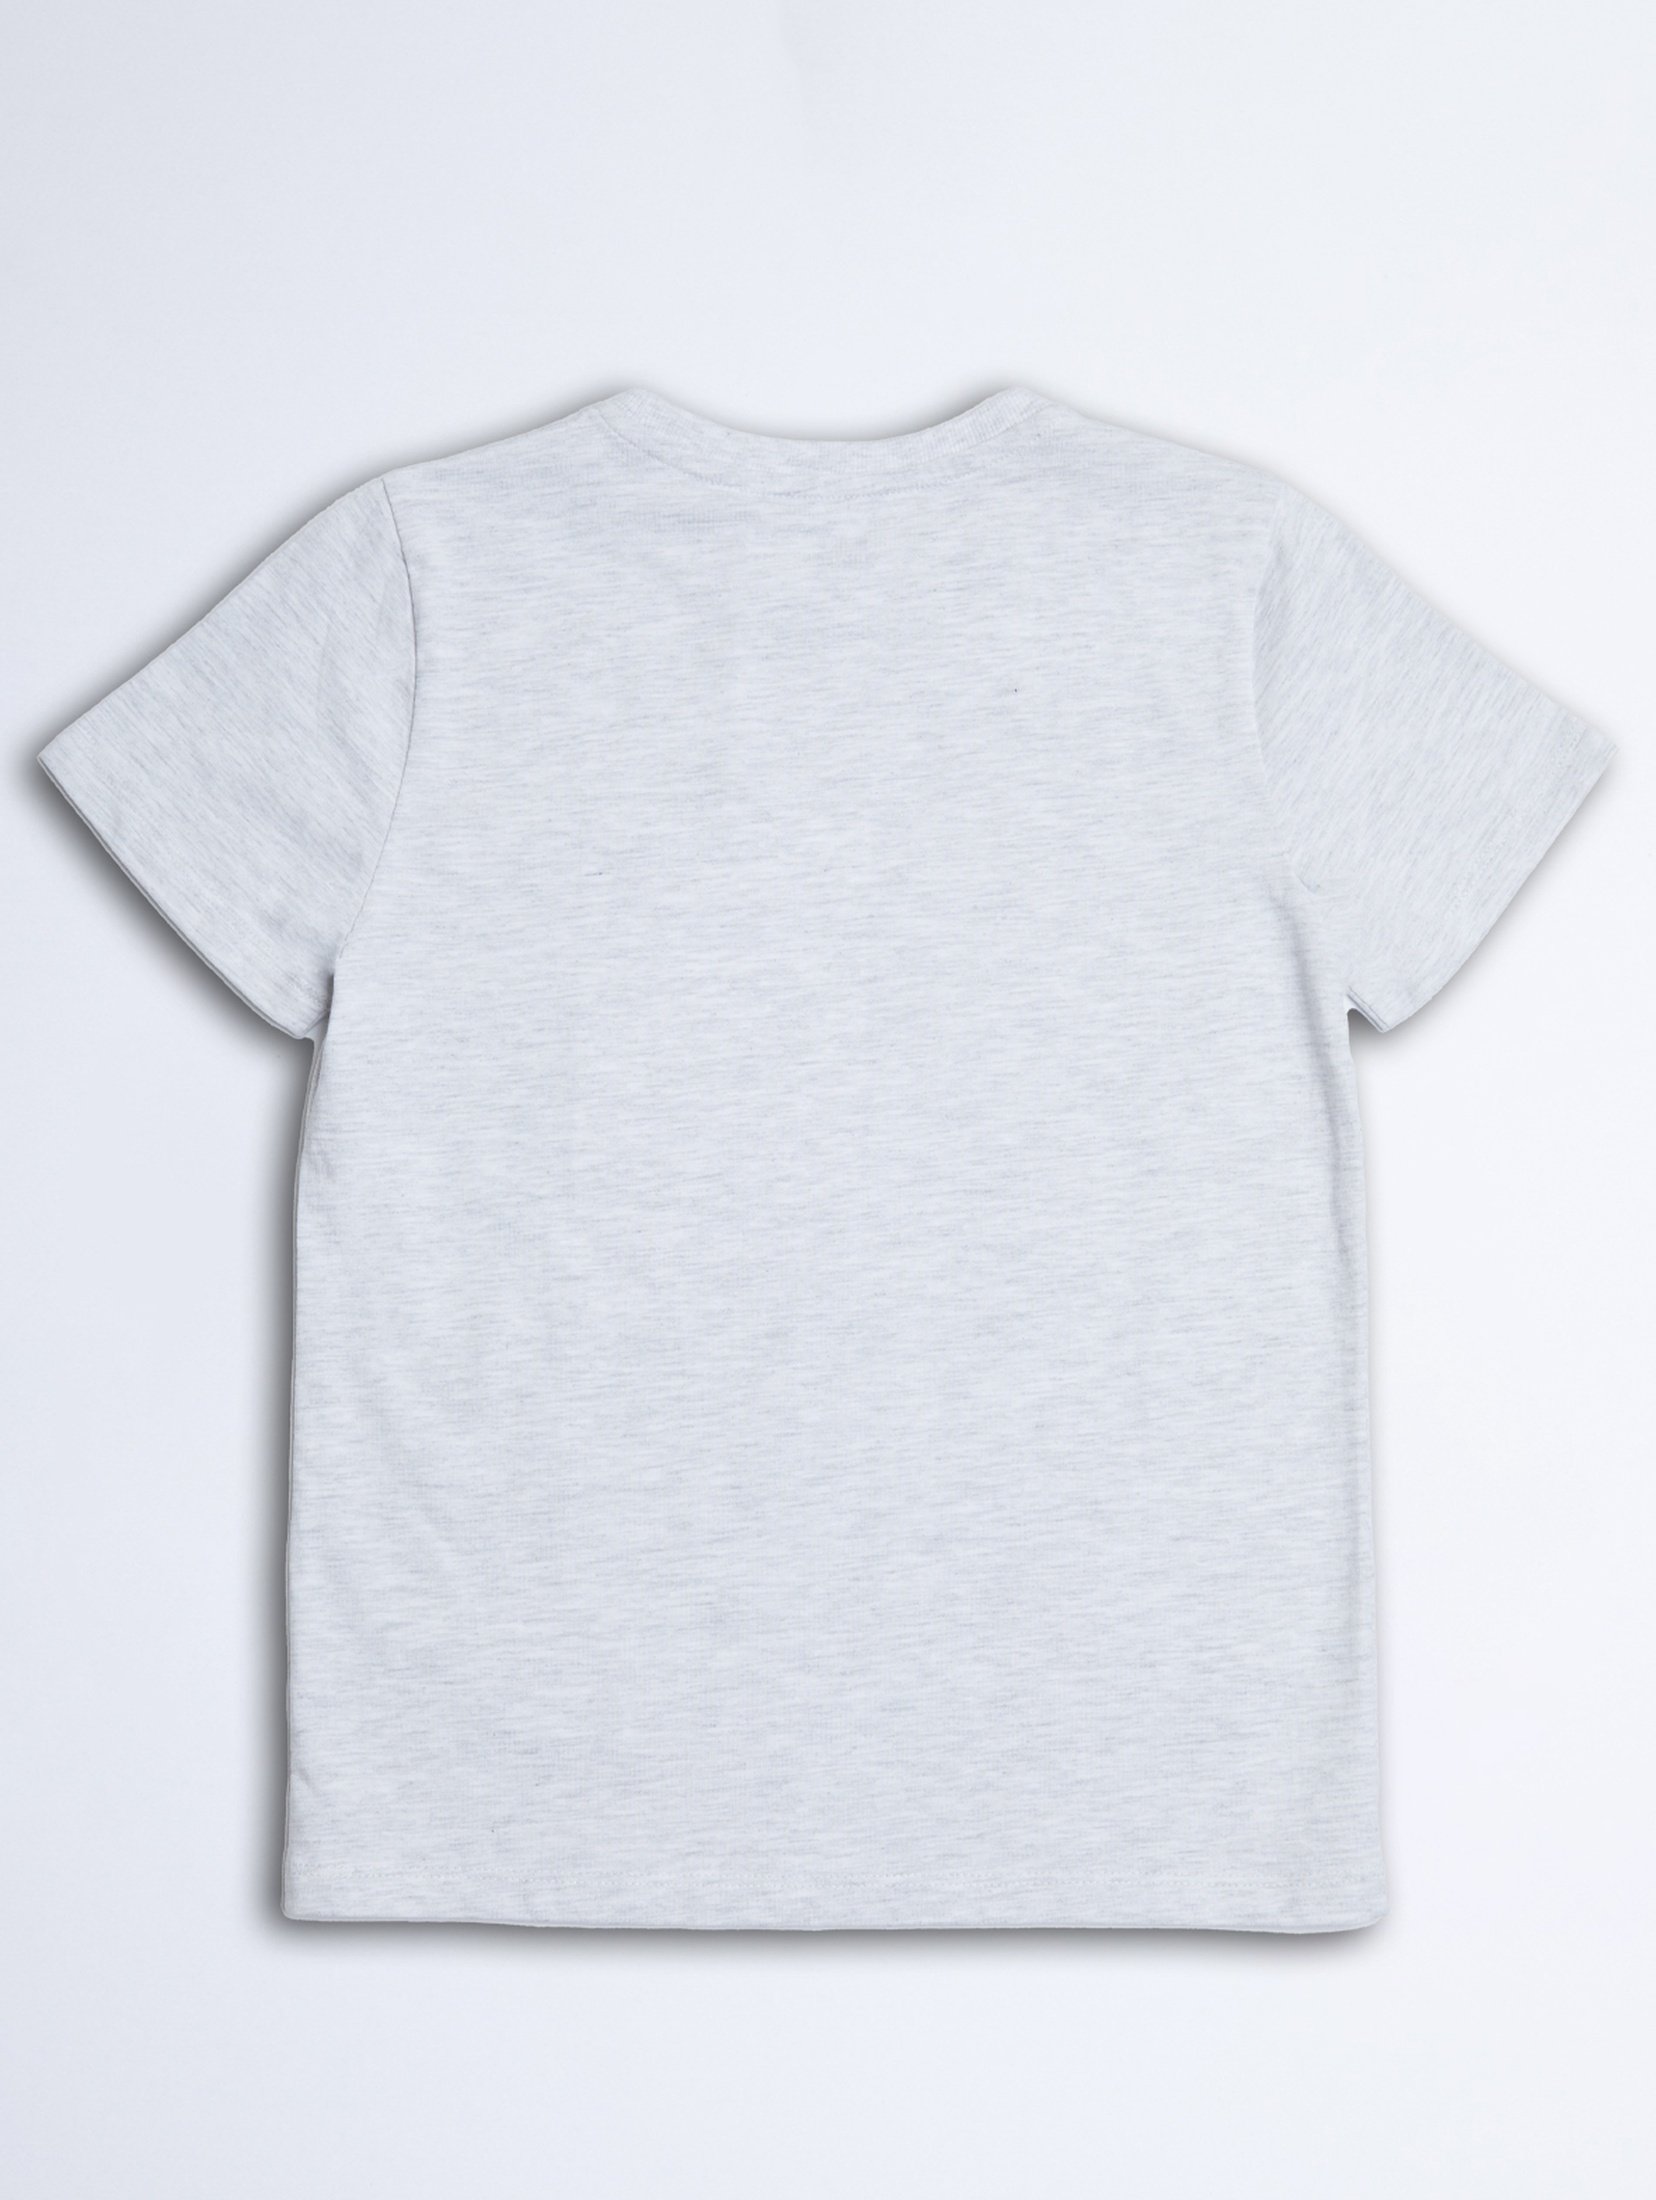 Szaro - melanżowy bawełniany t-shirt dla dziecka - unisex - Limited Edition